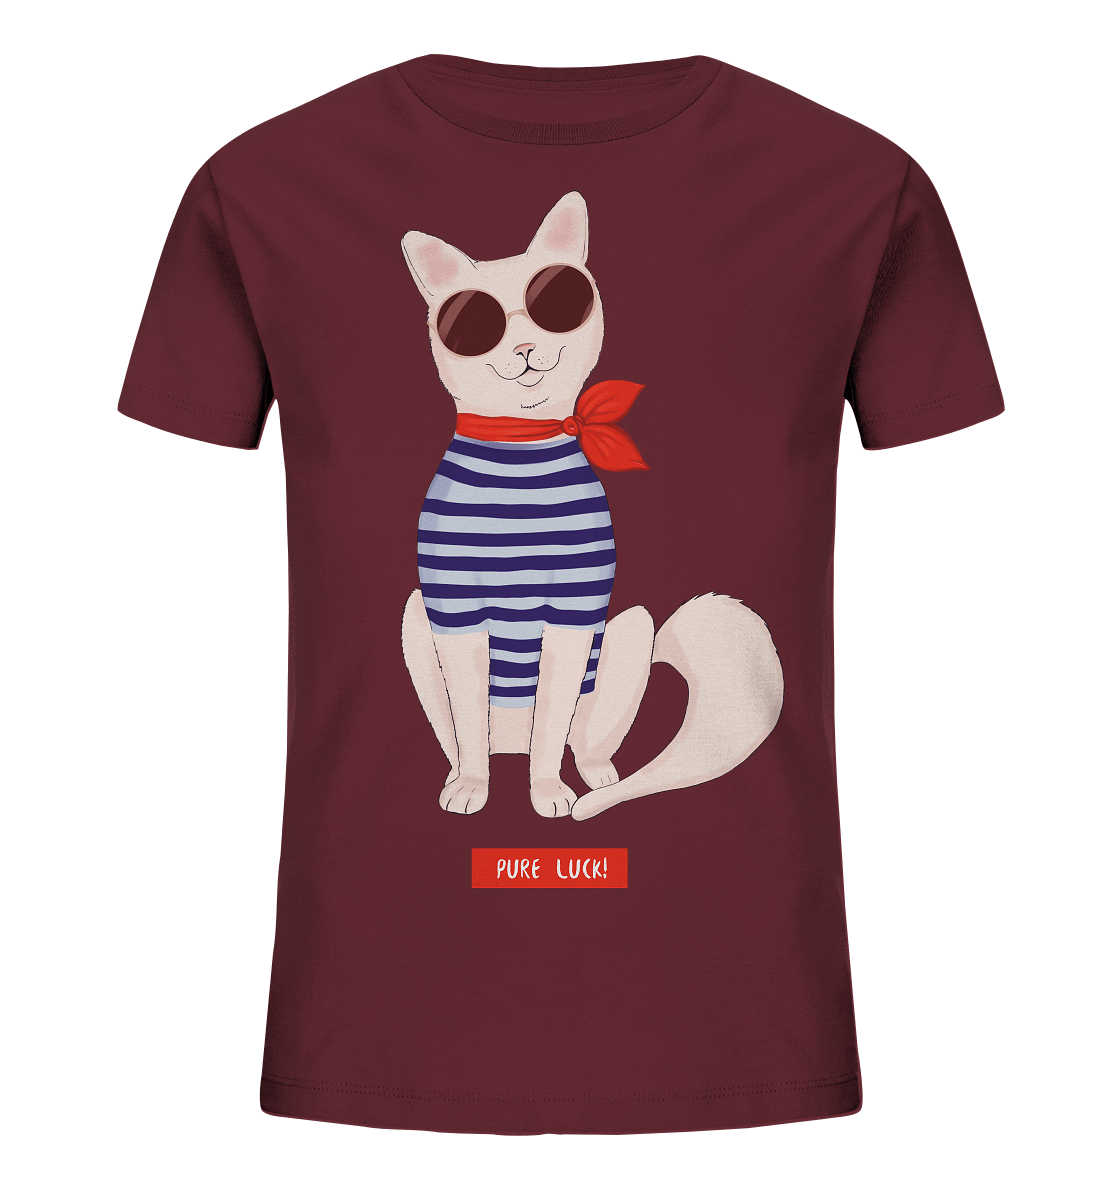 Maritime Katze Comic Kinder Shirt in burgundy mit Katze mit Sonnenbrille und Maritime Hemd